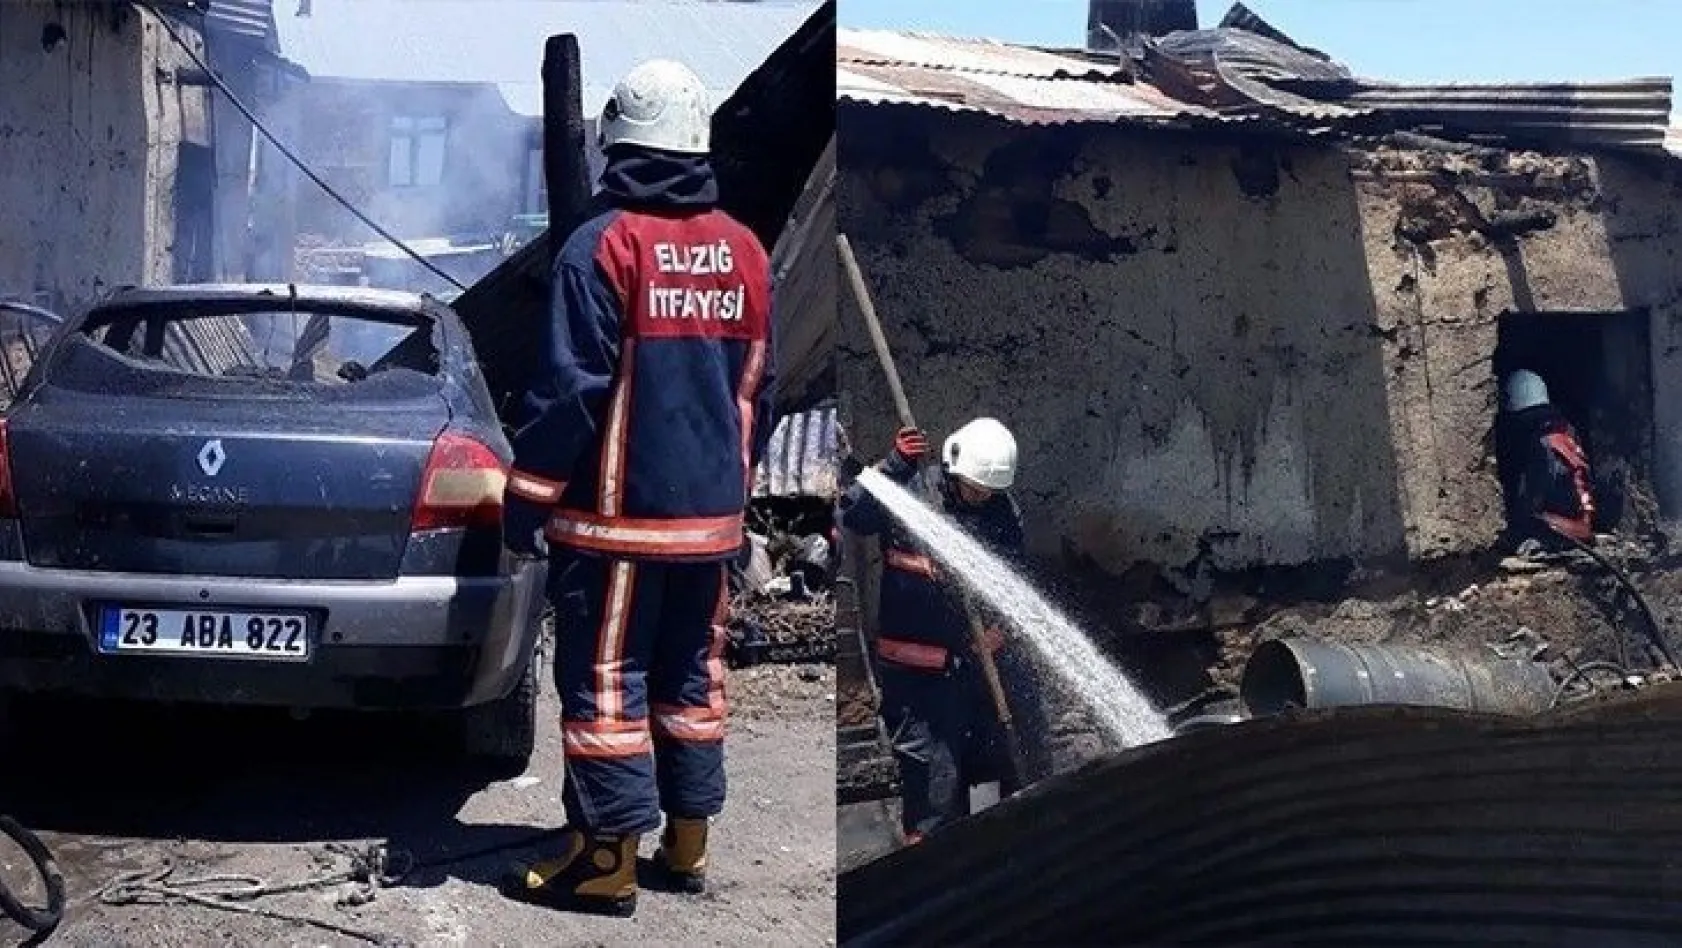 Elazığ'da ev ve araç yangını